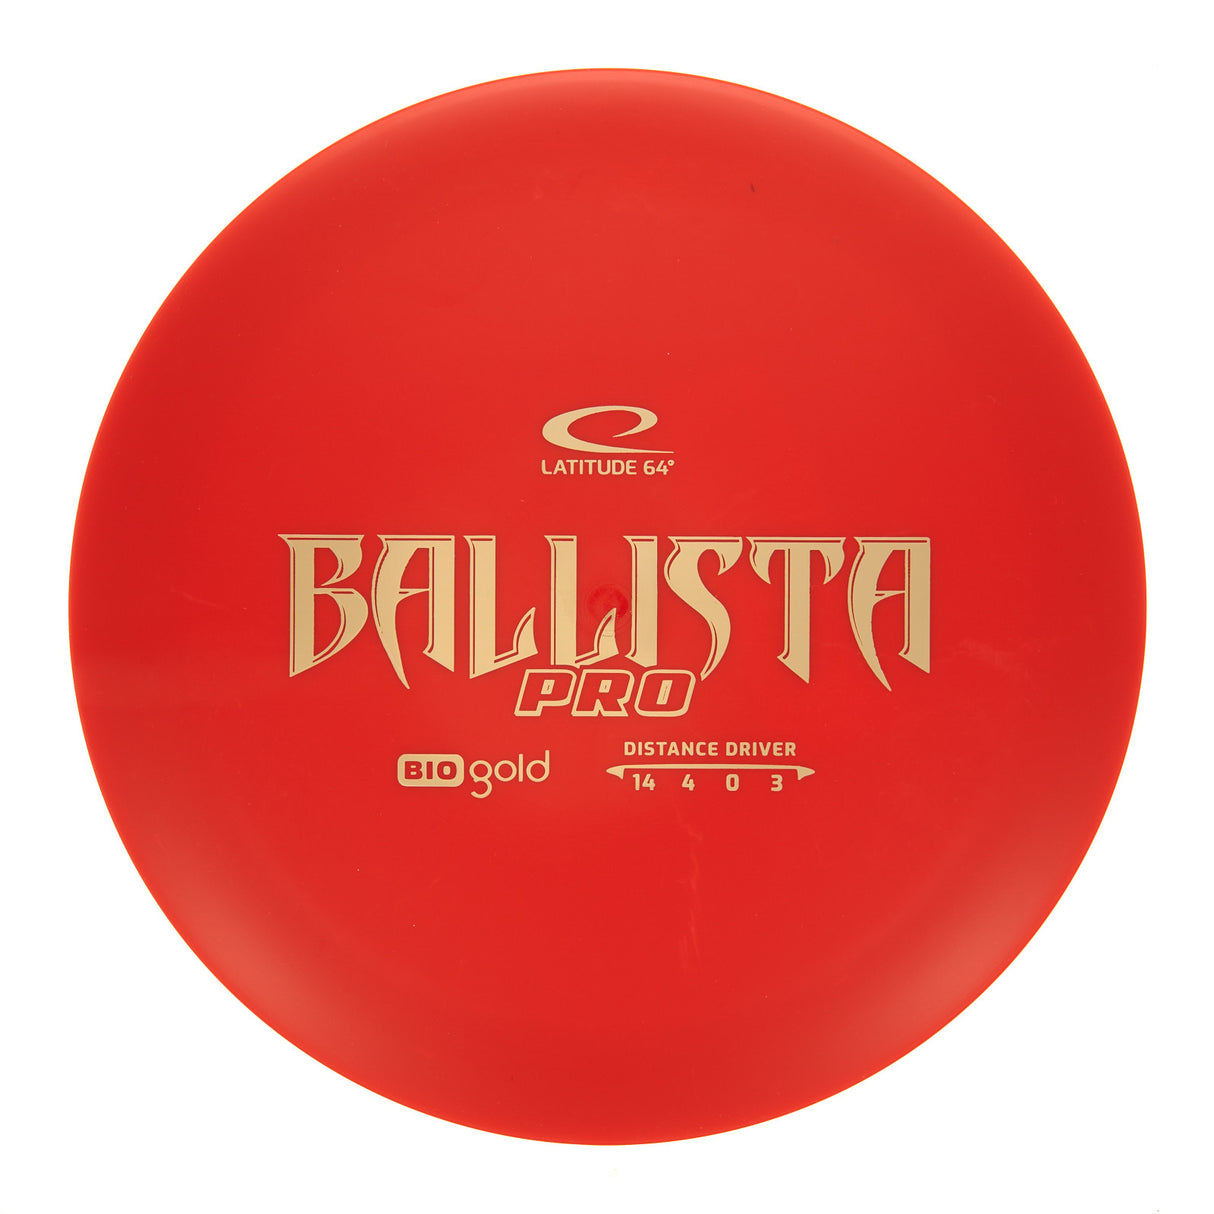 Latitude 64 Ballista Pro - Bio Gold 172g | Style 0002